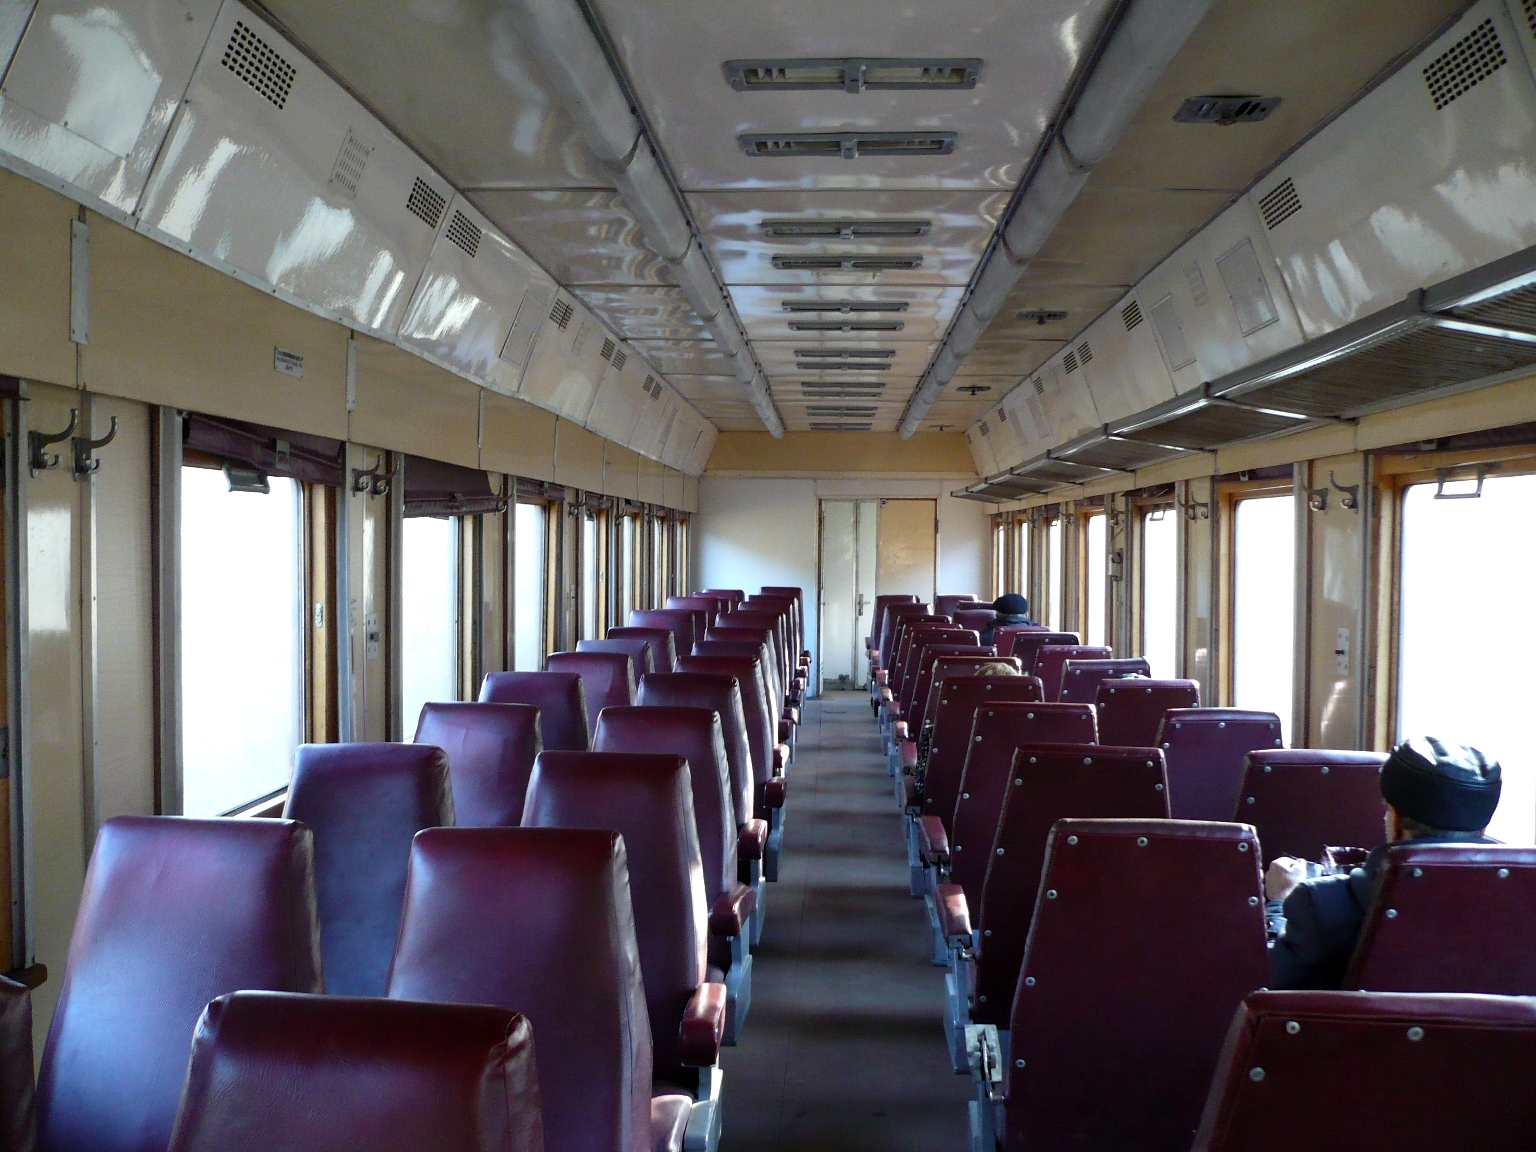 Поезд санкт петербург самара сидячий вагон фото внутри